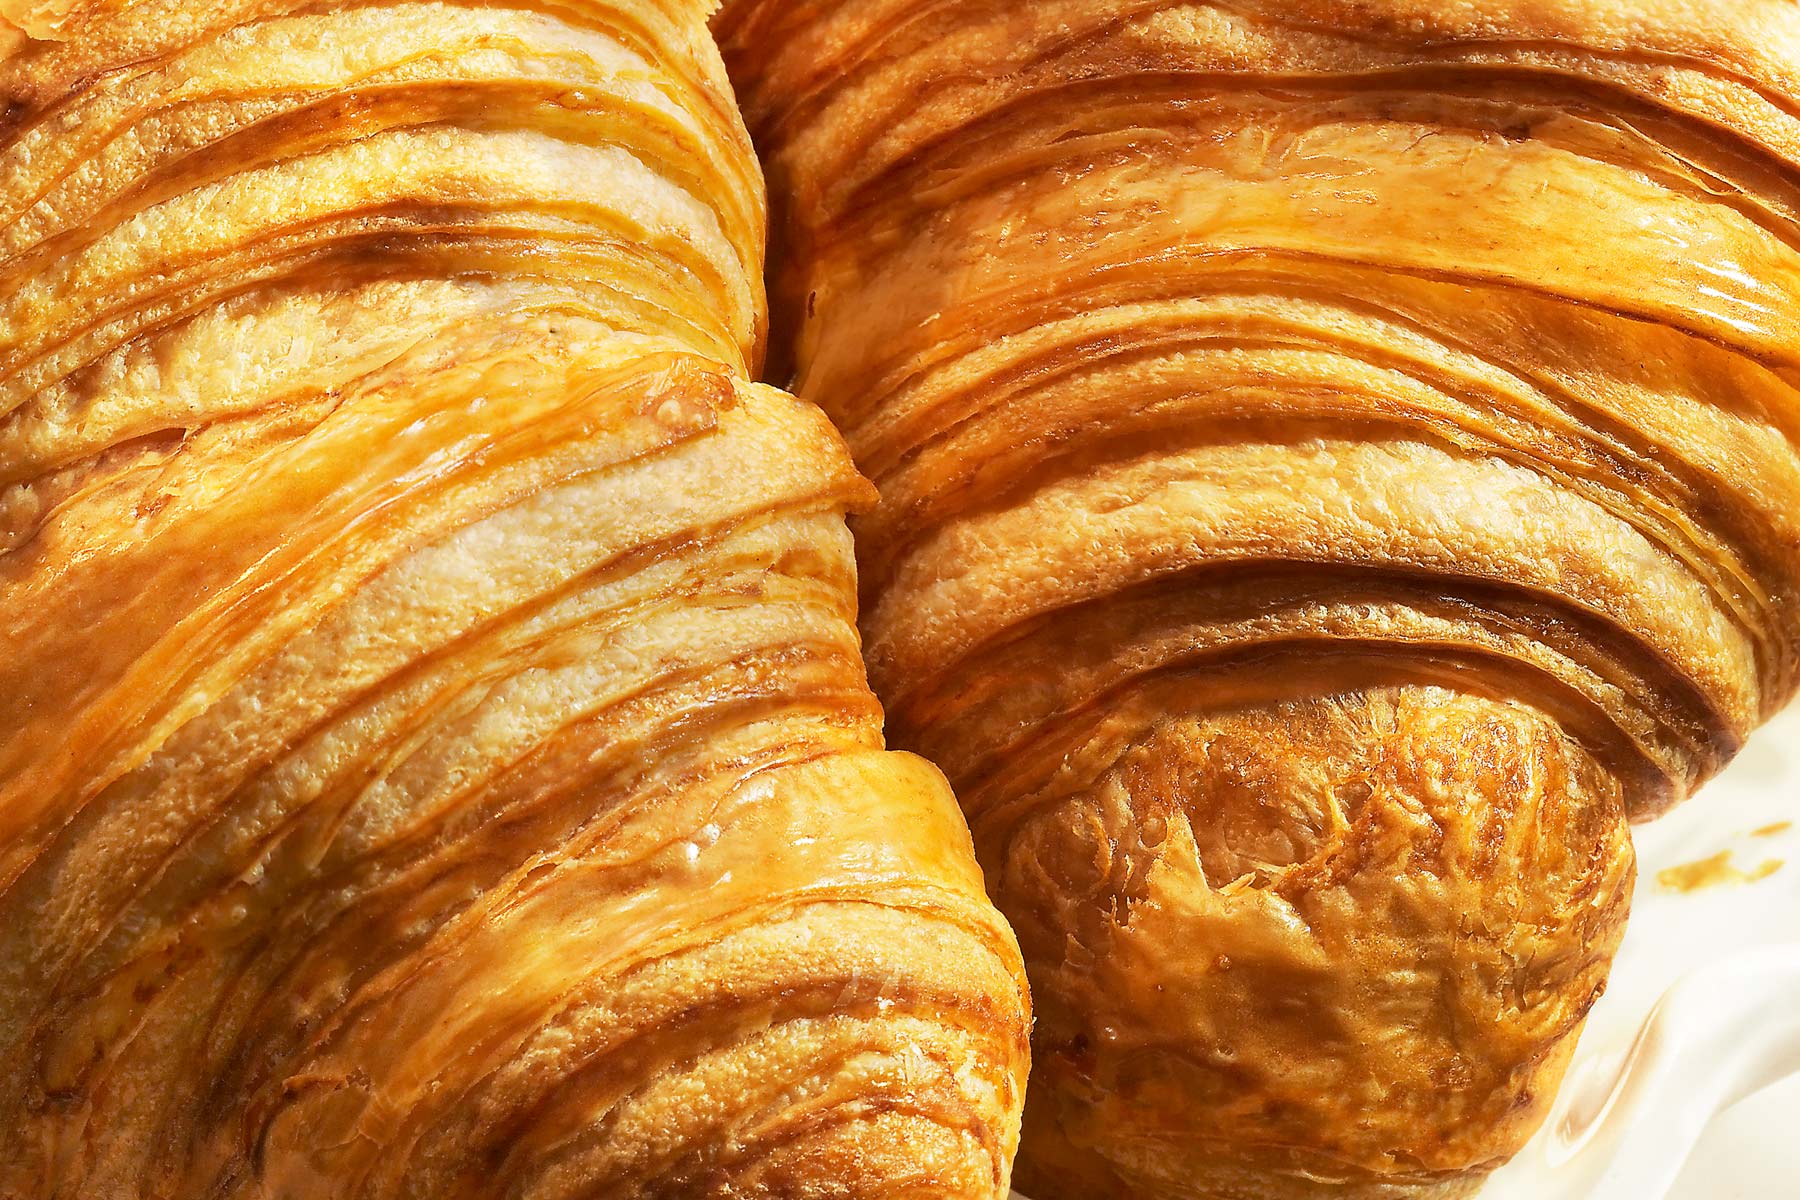 Croissant textural closeup shot